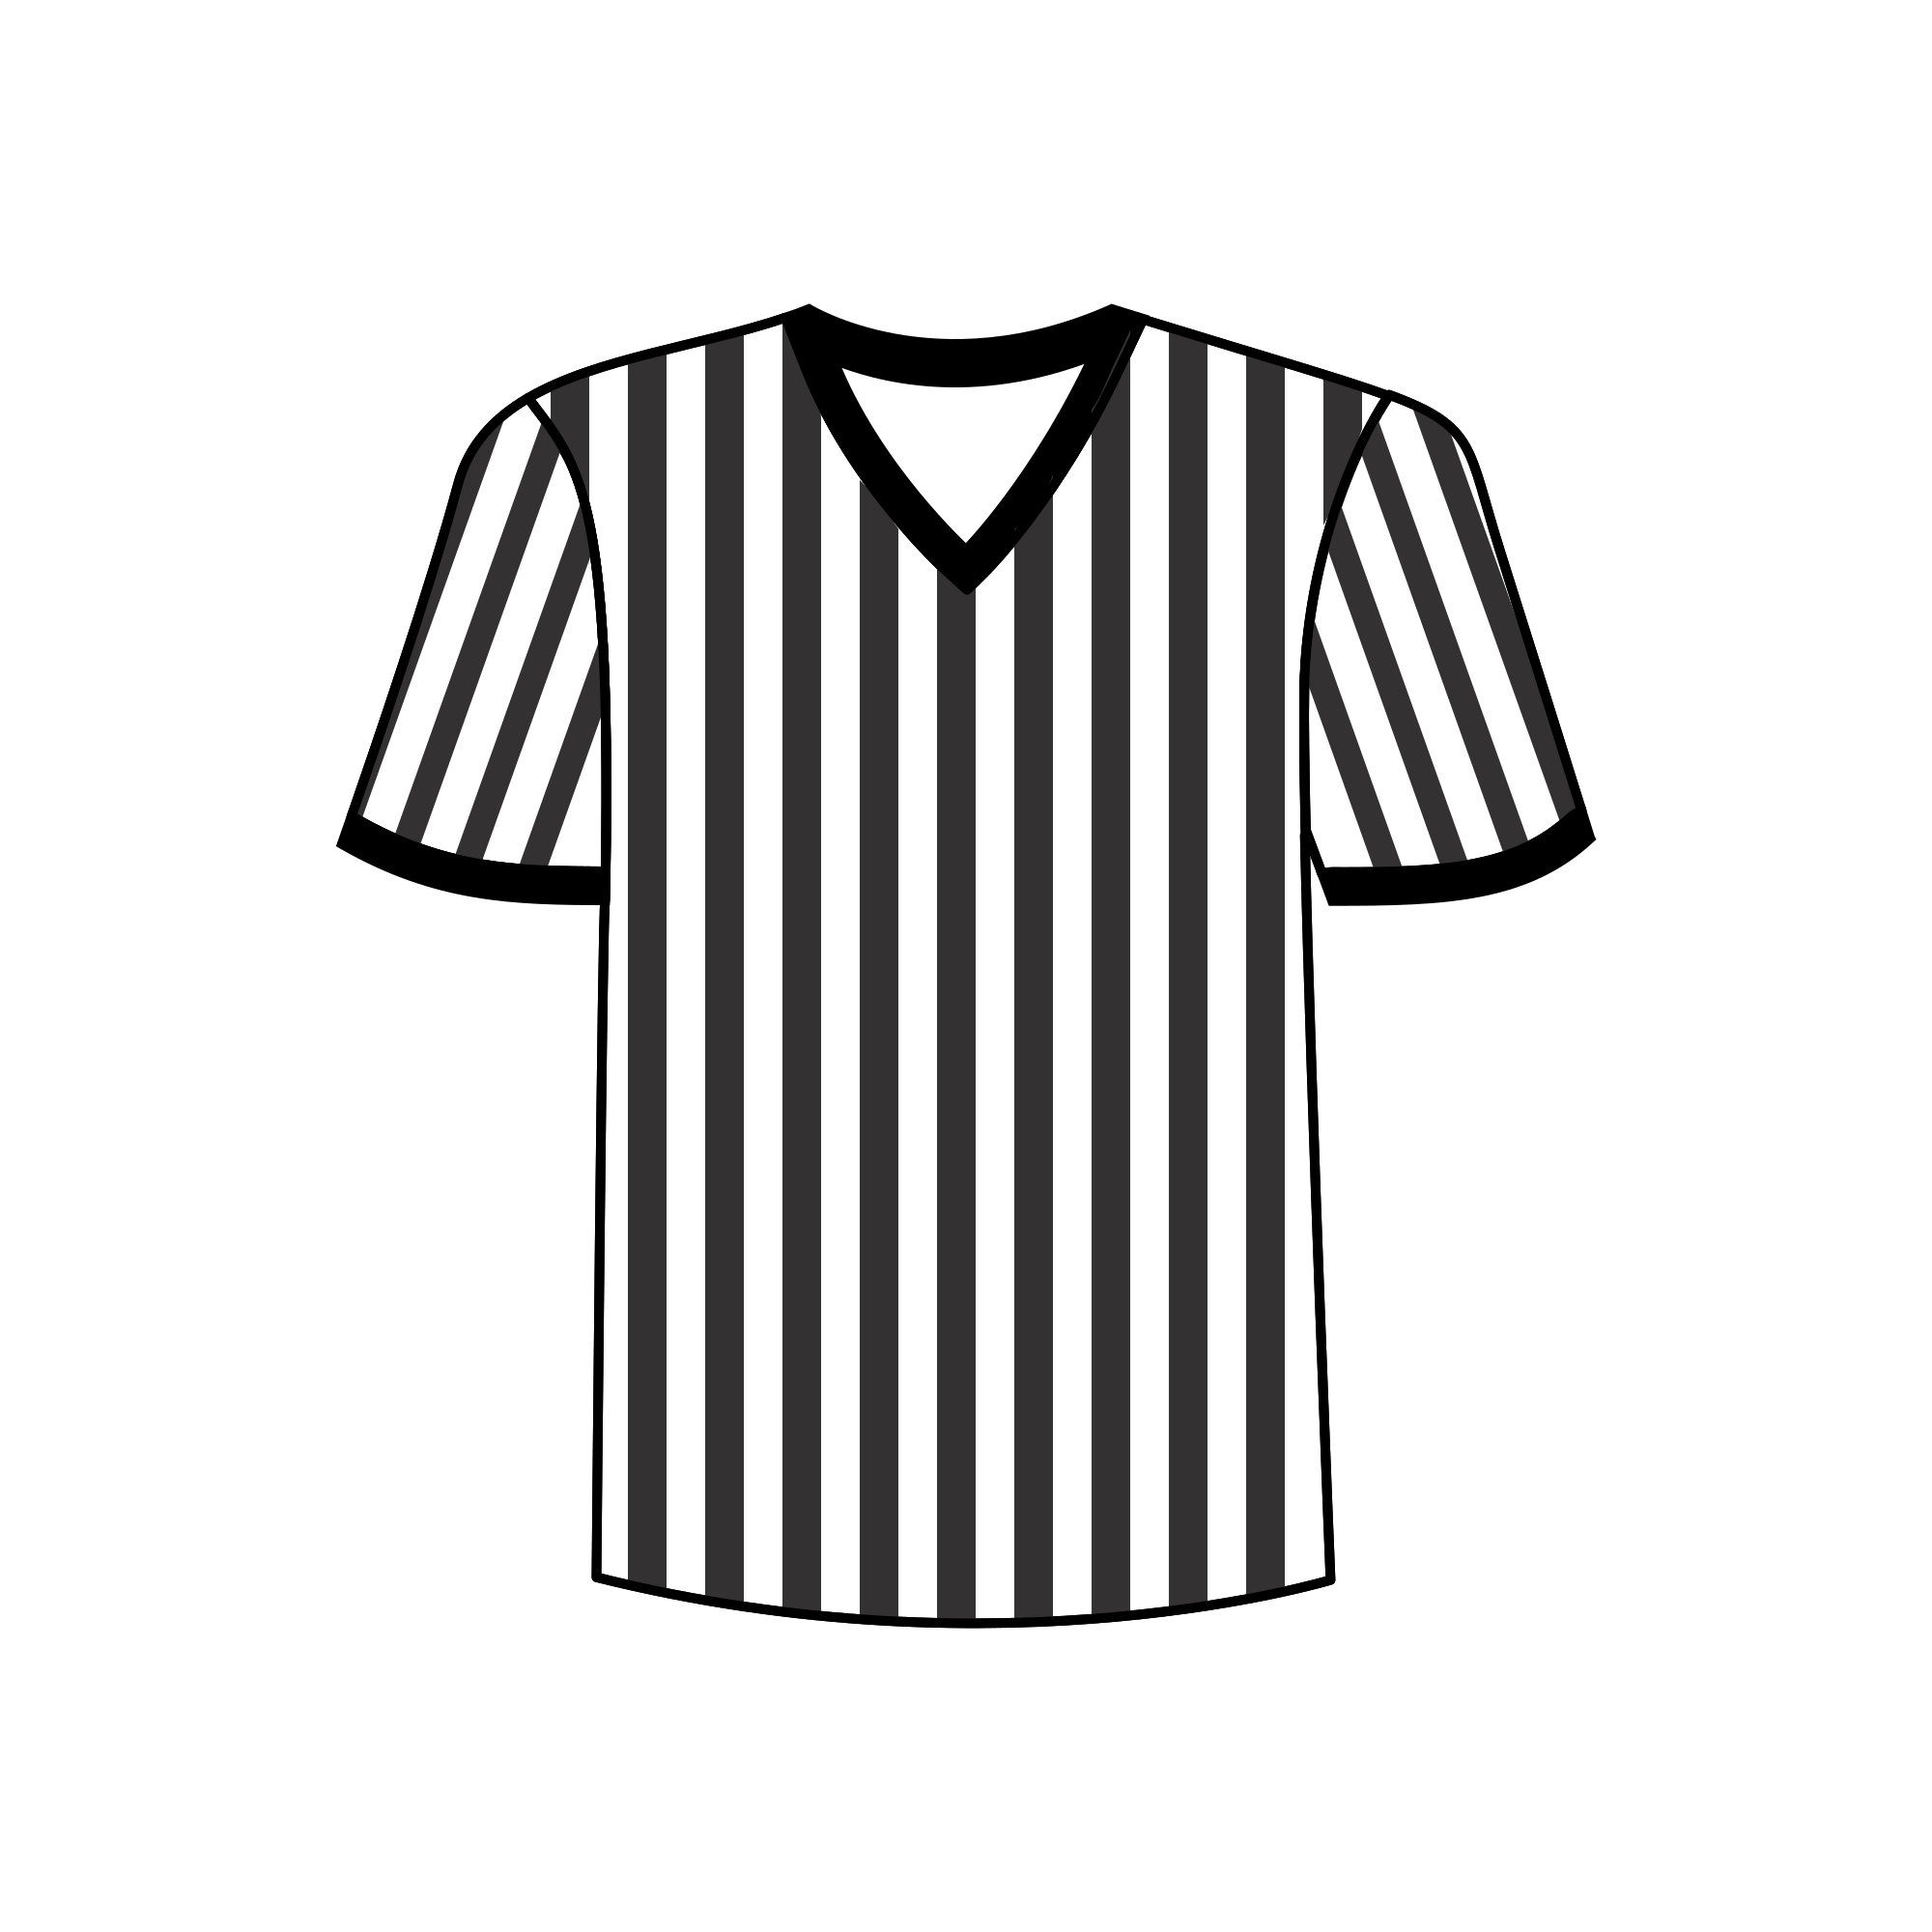 Jersey referee jersey